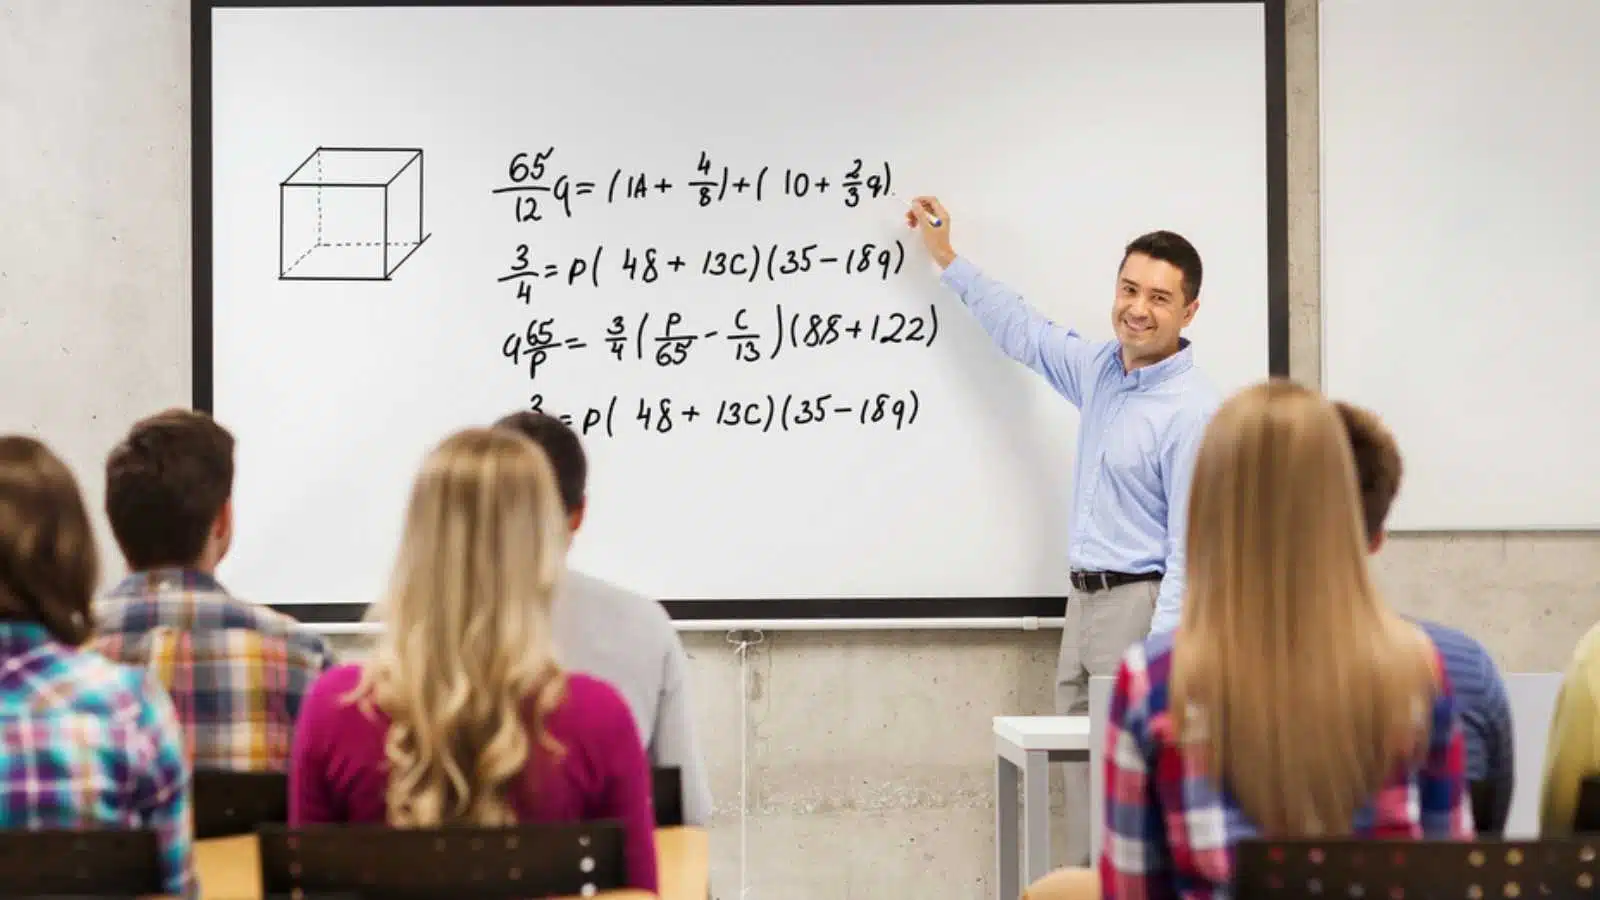 Professor teaching maths